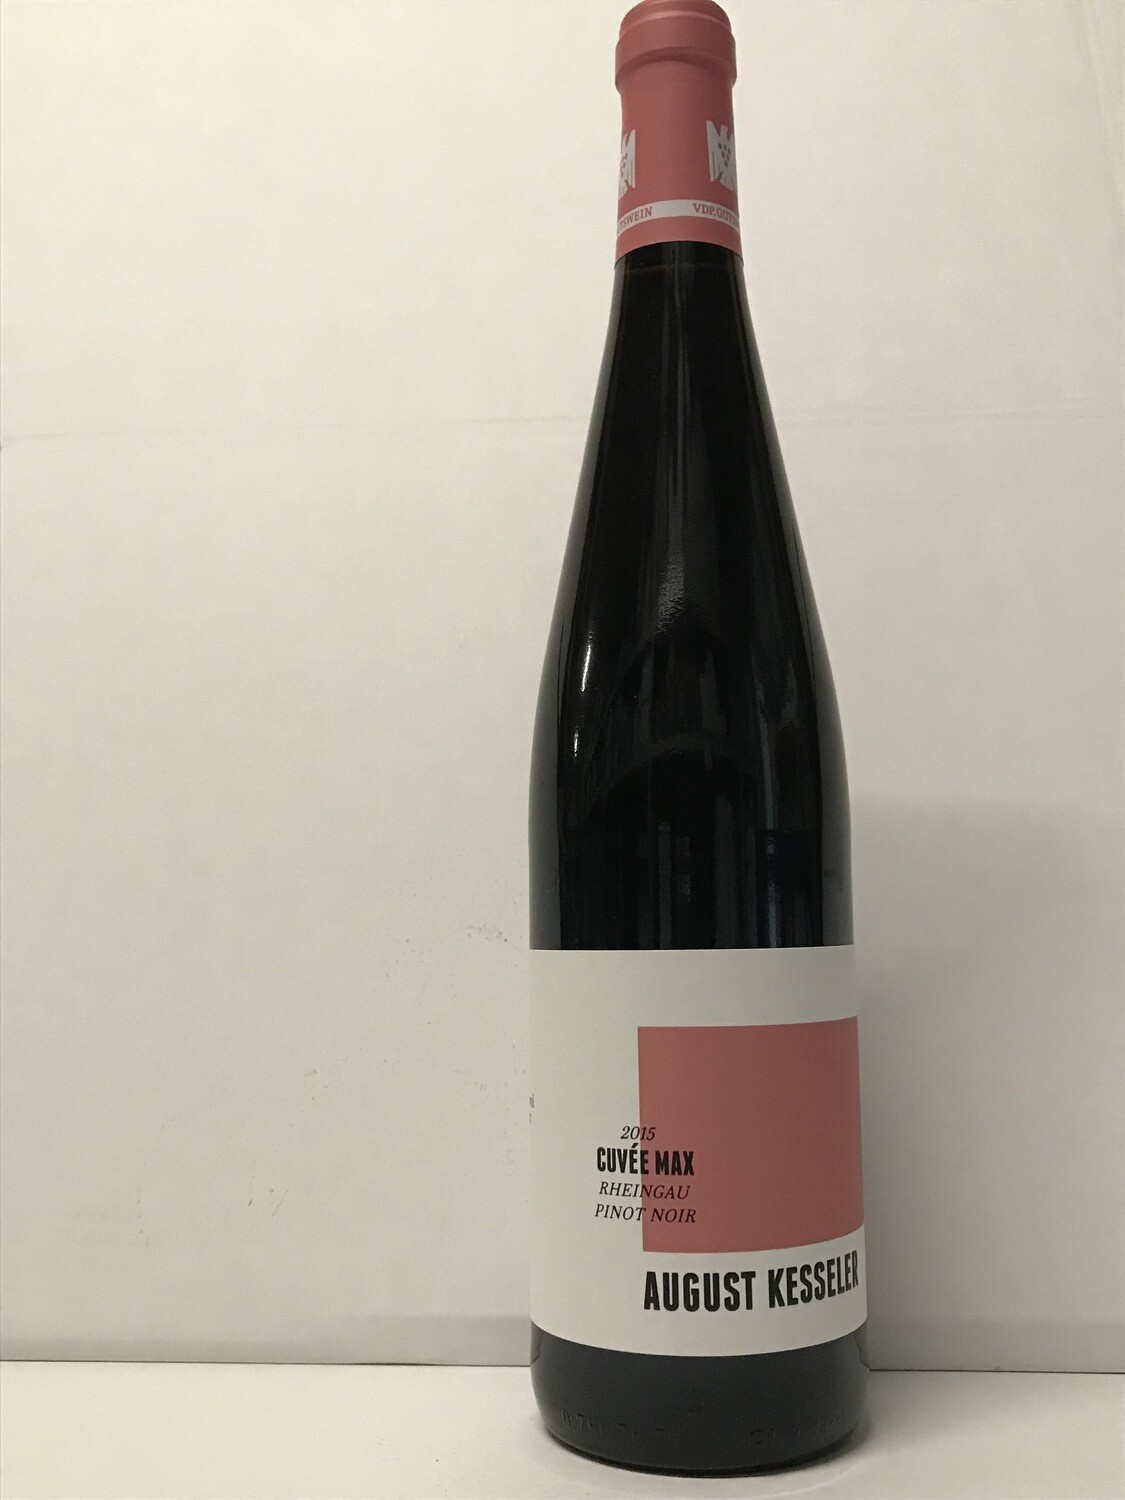 Pinot noir-2015 droog Cuvée Max August Kesseler (Rheingau)